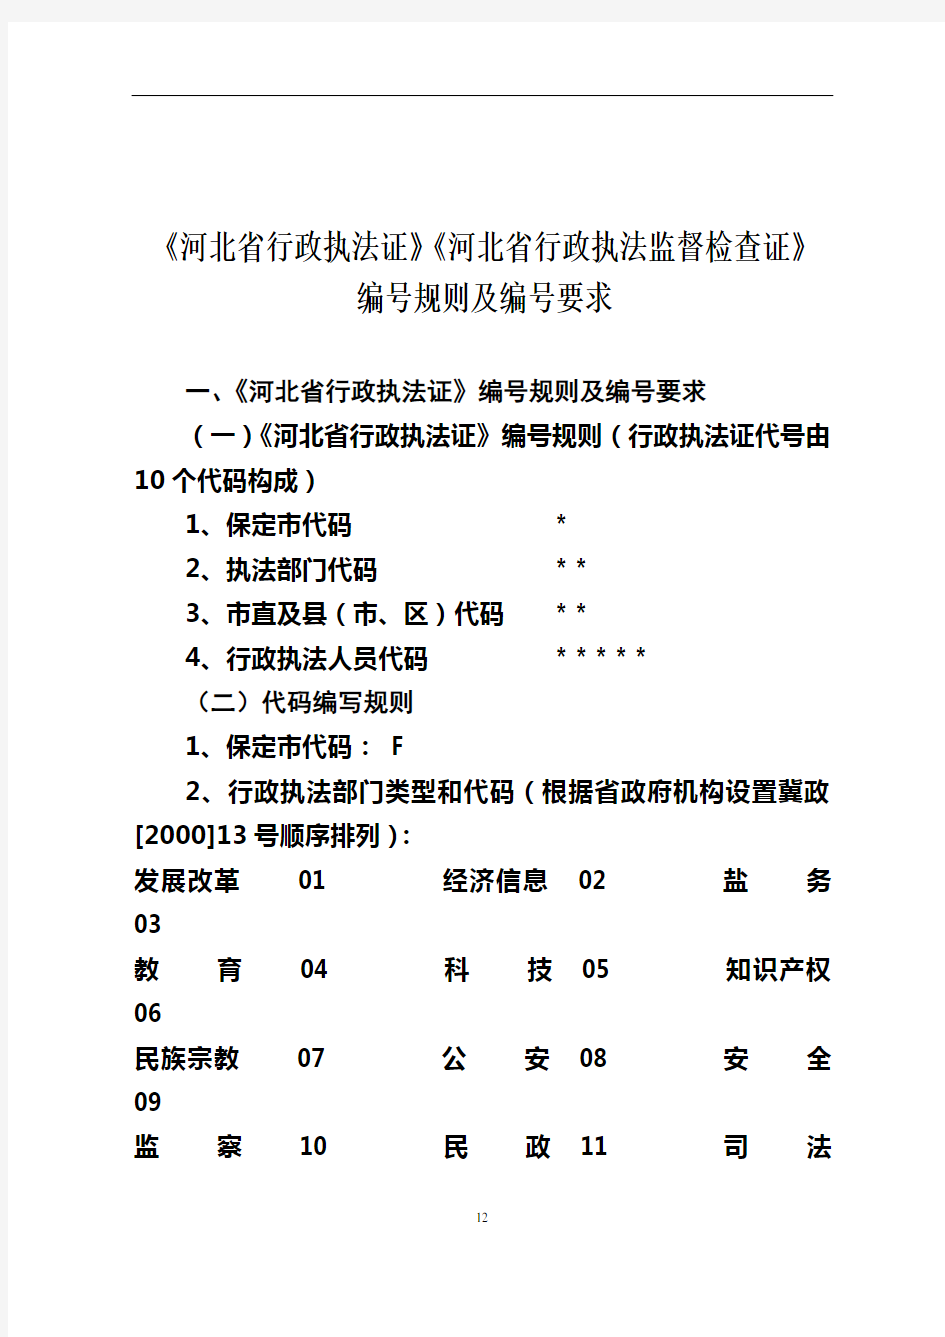 《河北省行政执法证》编号规则及编号要求